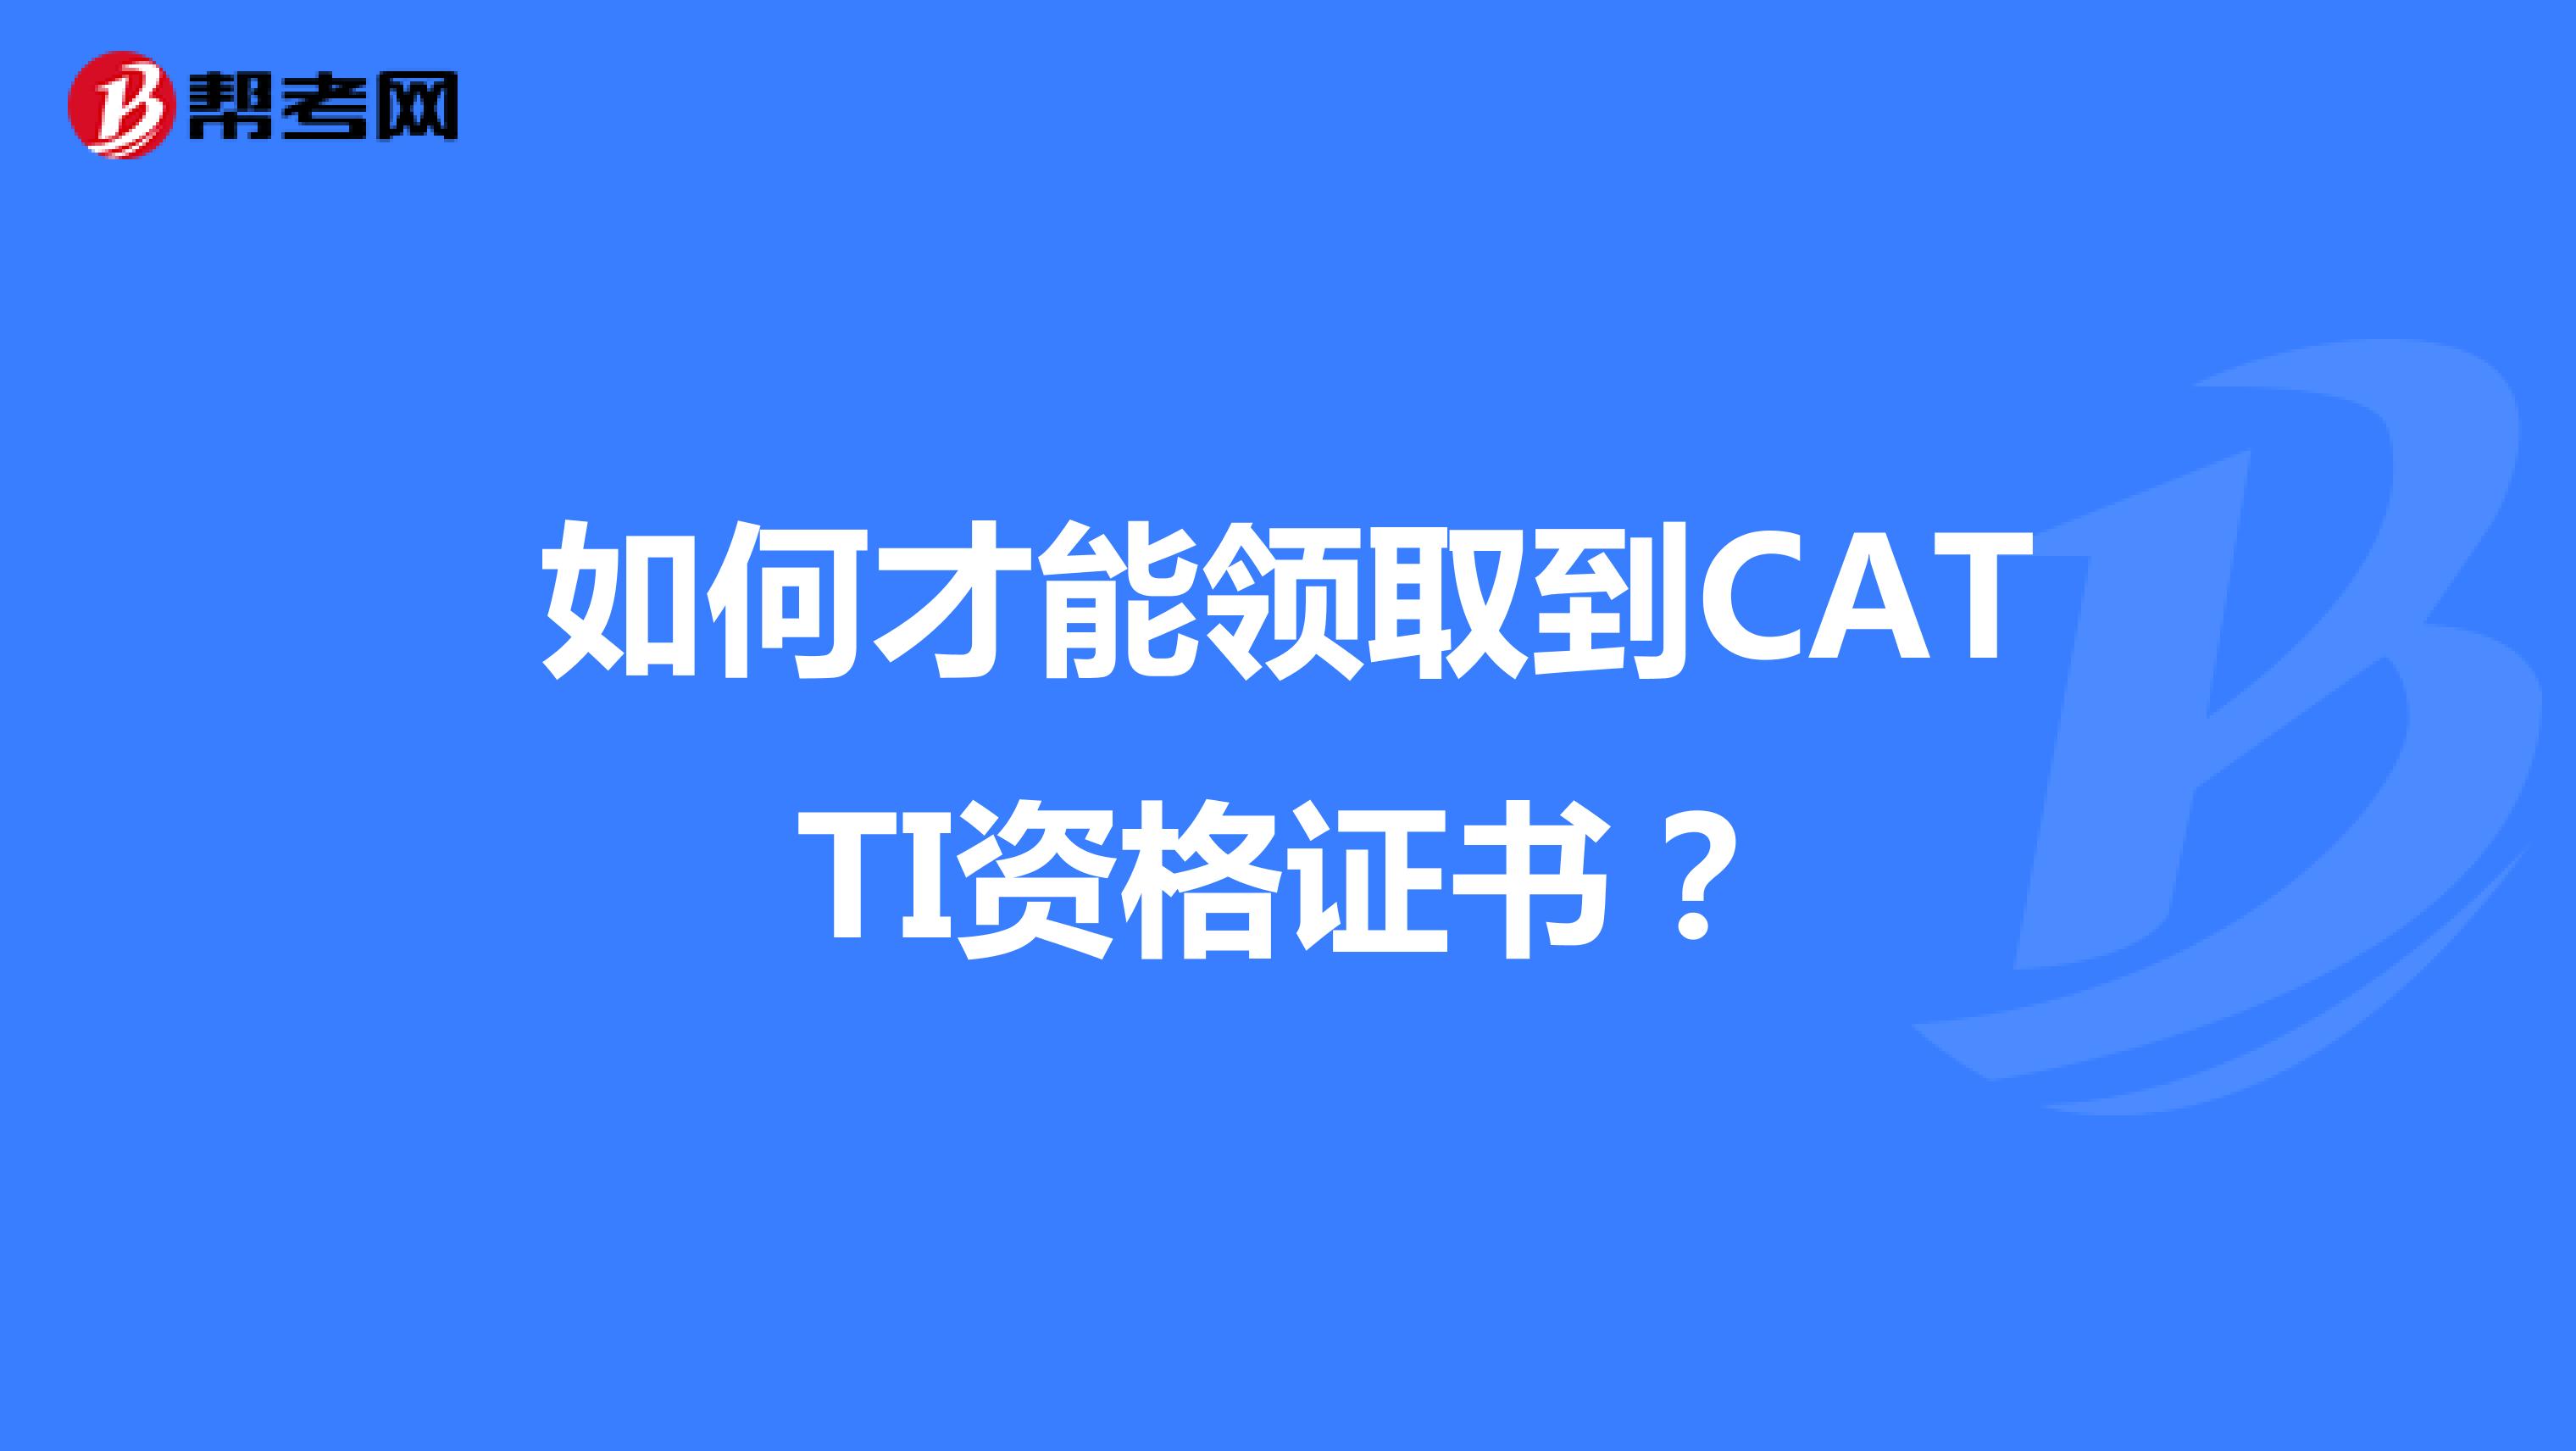 如何才能领取到CATTI资格证书？